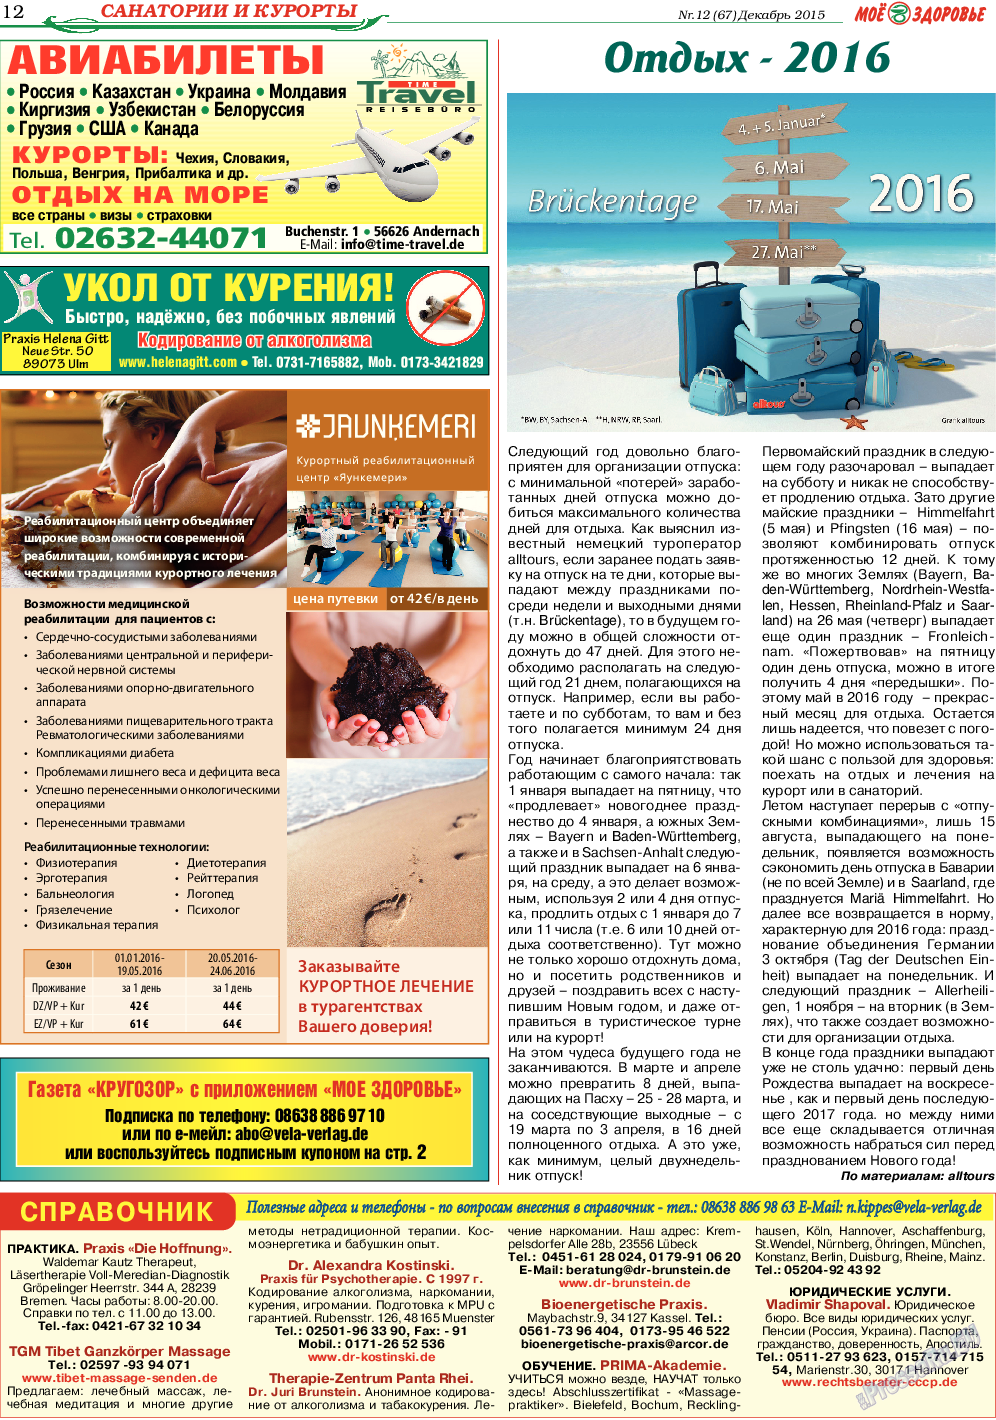 Кругозор, газета. 2015 №12 стр.12